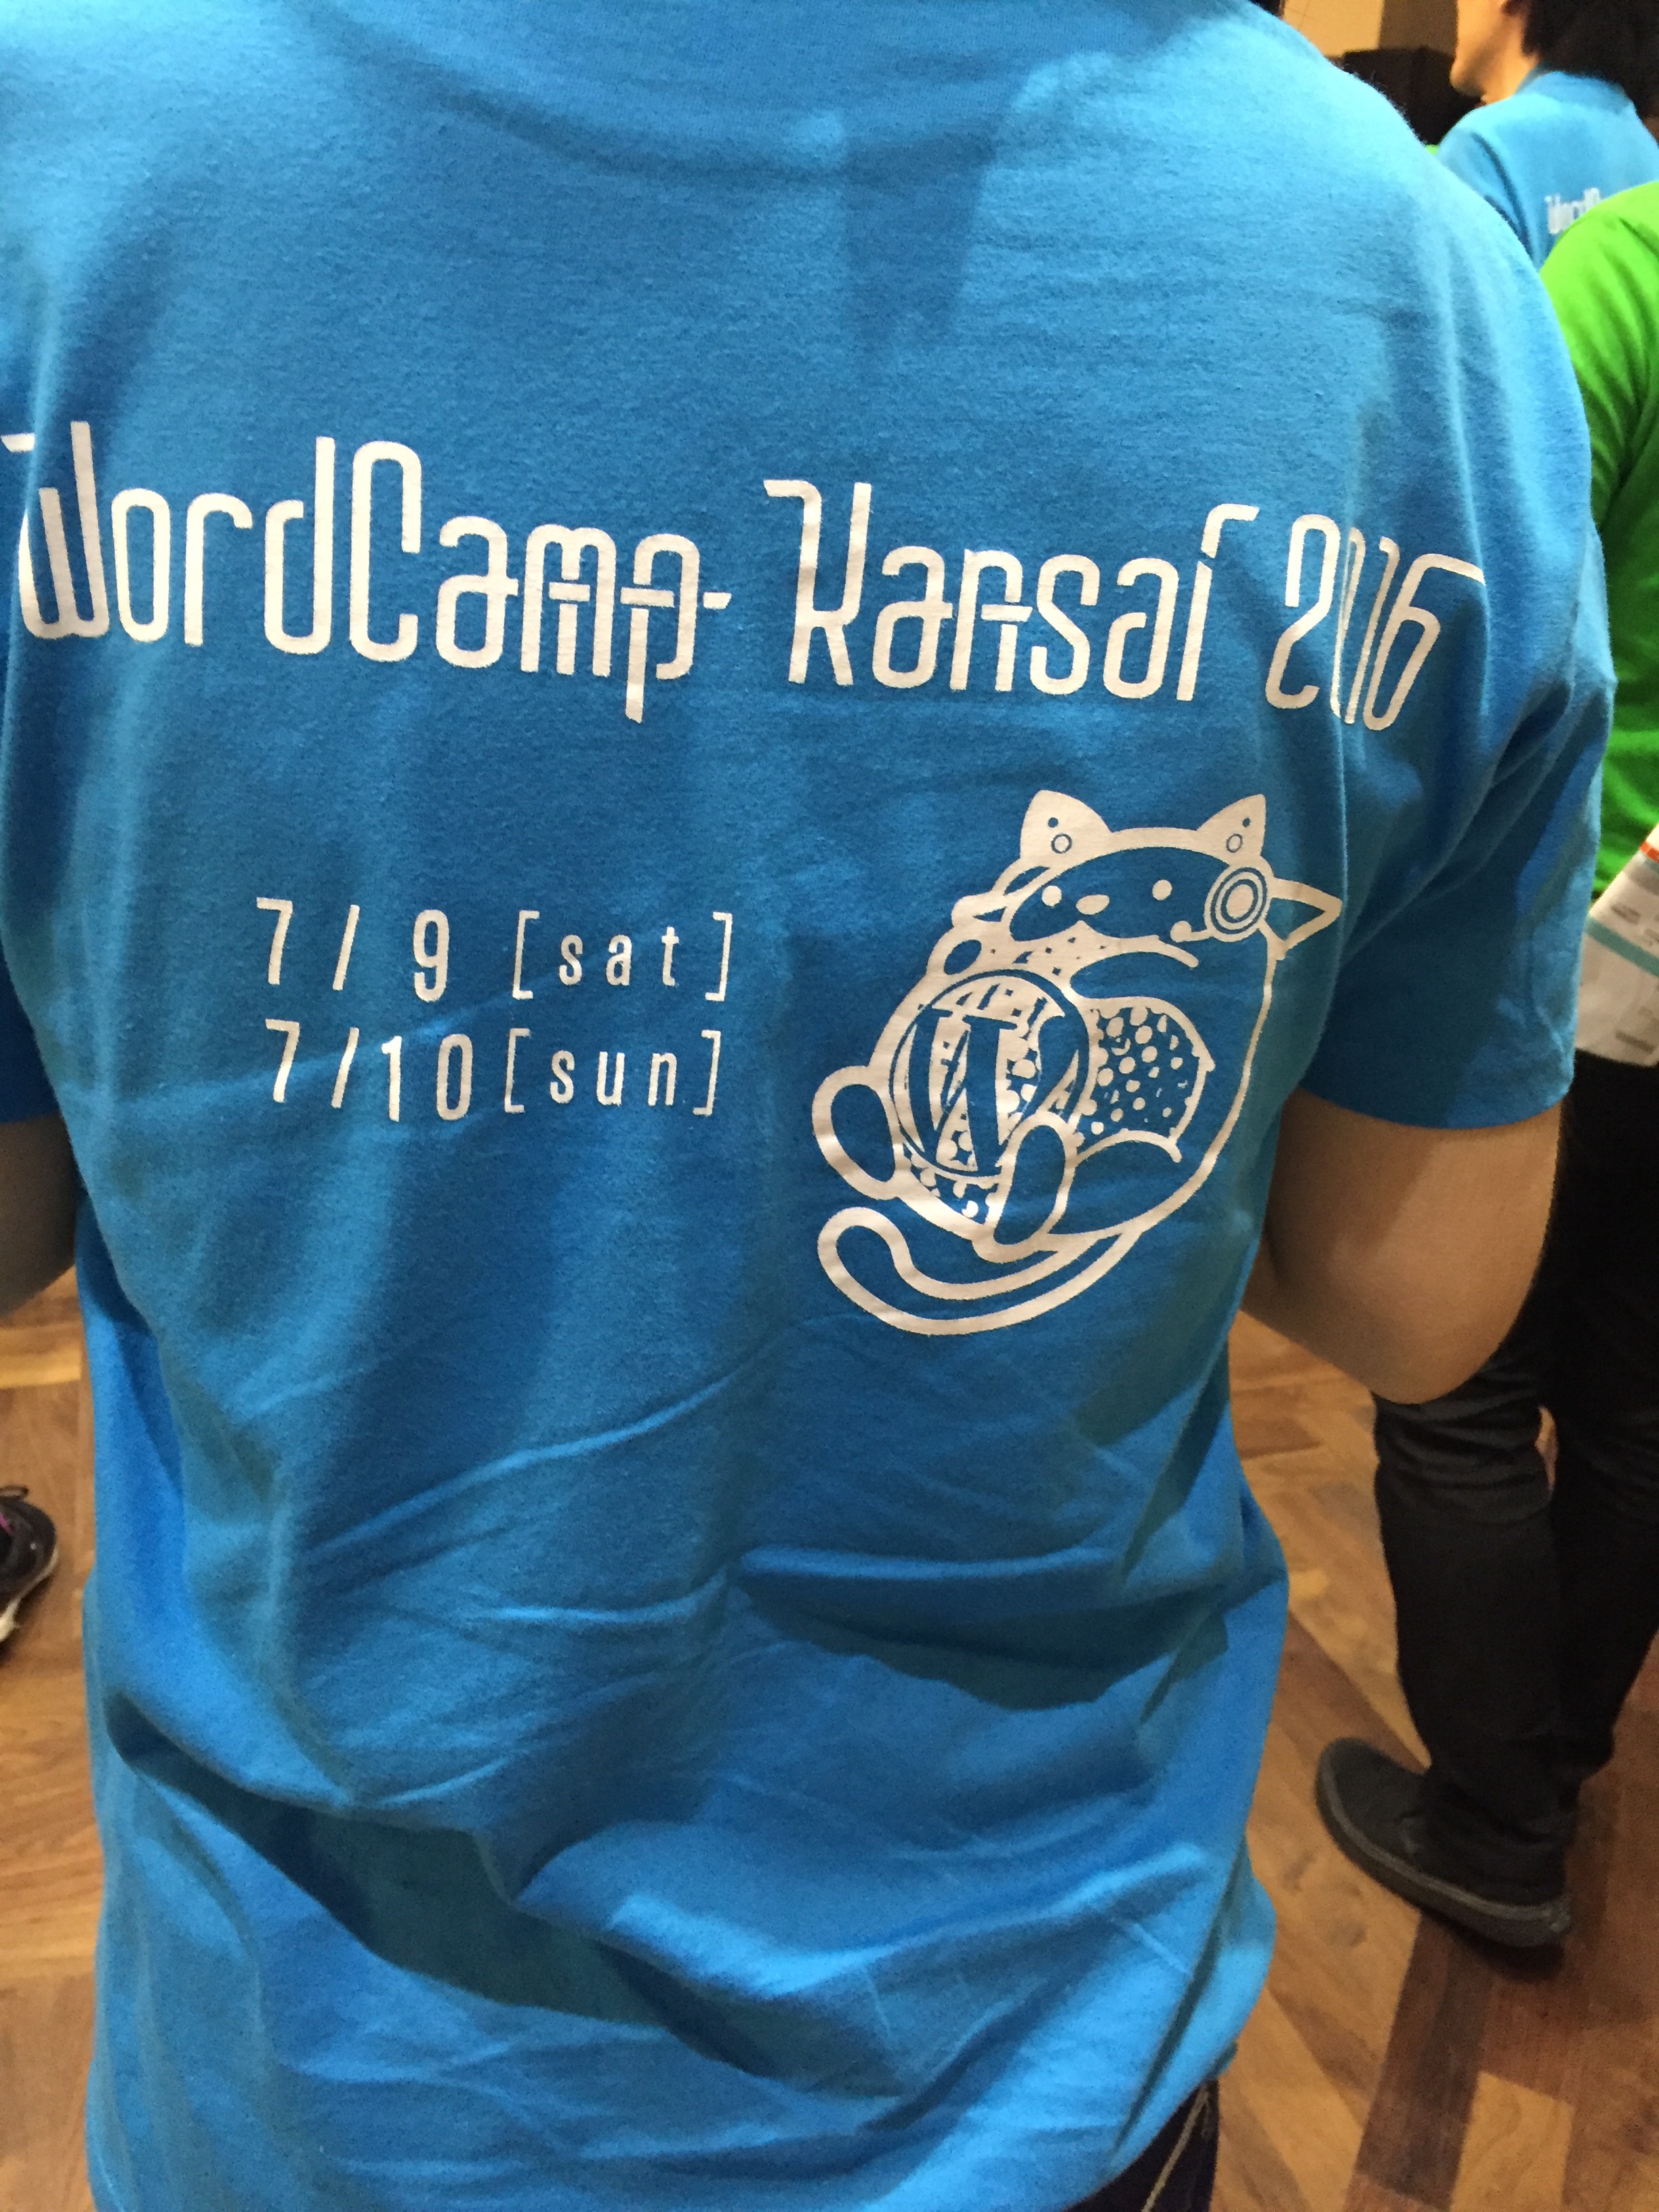 WordCamp Kansai 2016 Tシャツ